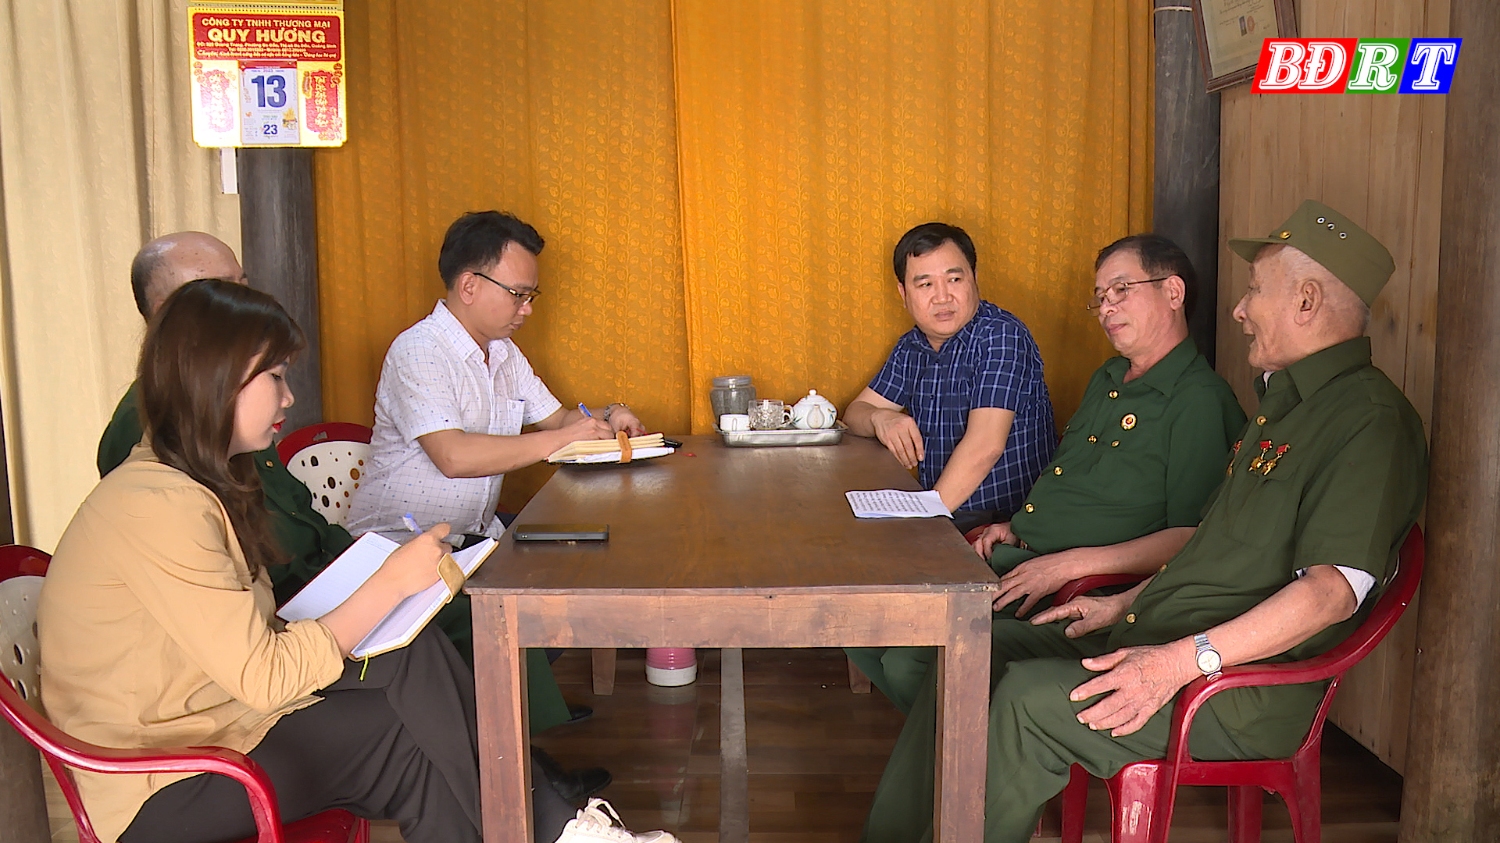 Anh hùng LLVT Mai Văn Hà kể lại kỷ niệm được gặp bác Đồng Sỹ Nguyên tại chiến trường Trường Sơn